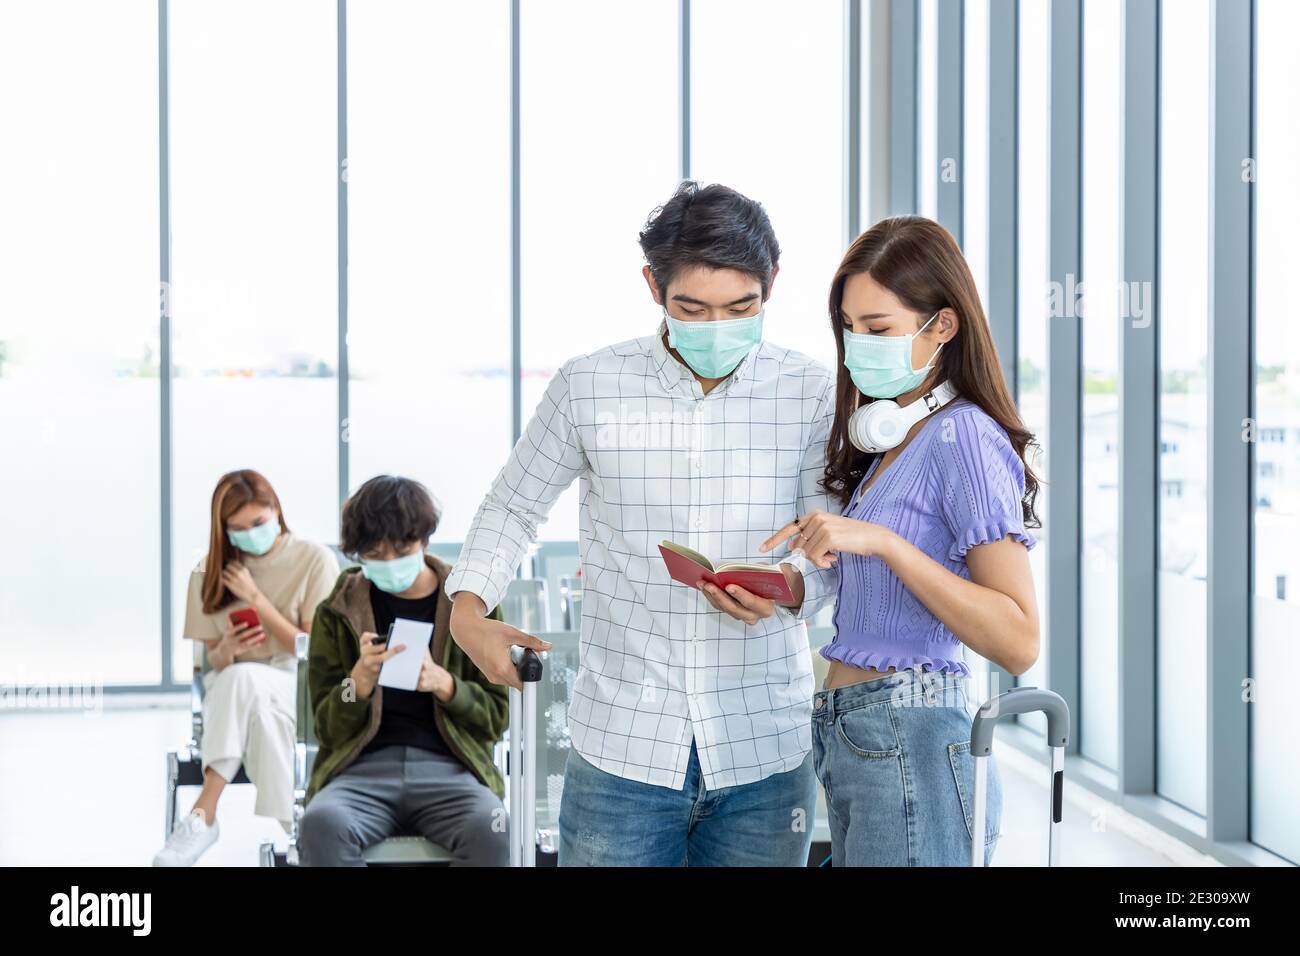 Coppie di viaggiatori che indossano una maschera protettiva in aeroporto, durante la pandemia di Covid-19, con protocollo di allontanamento sociale. Tenendo in mano e indicando il passaporto e d Foto Stock